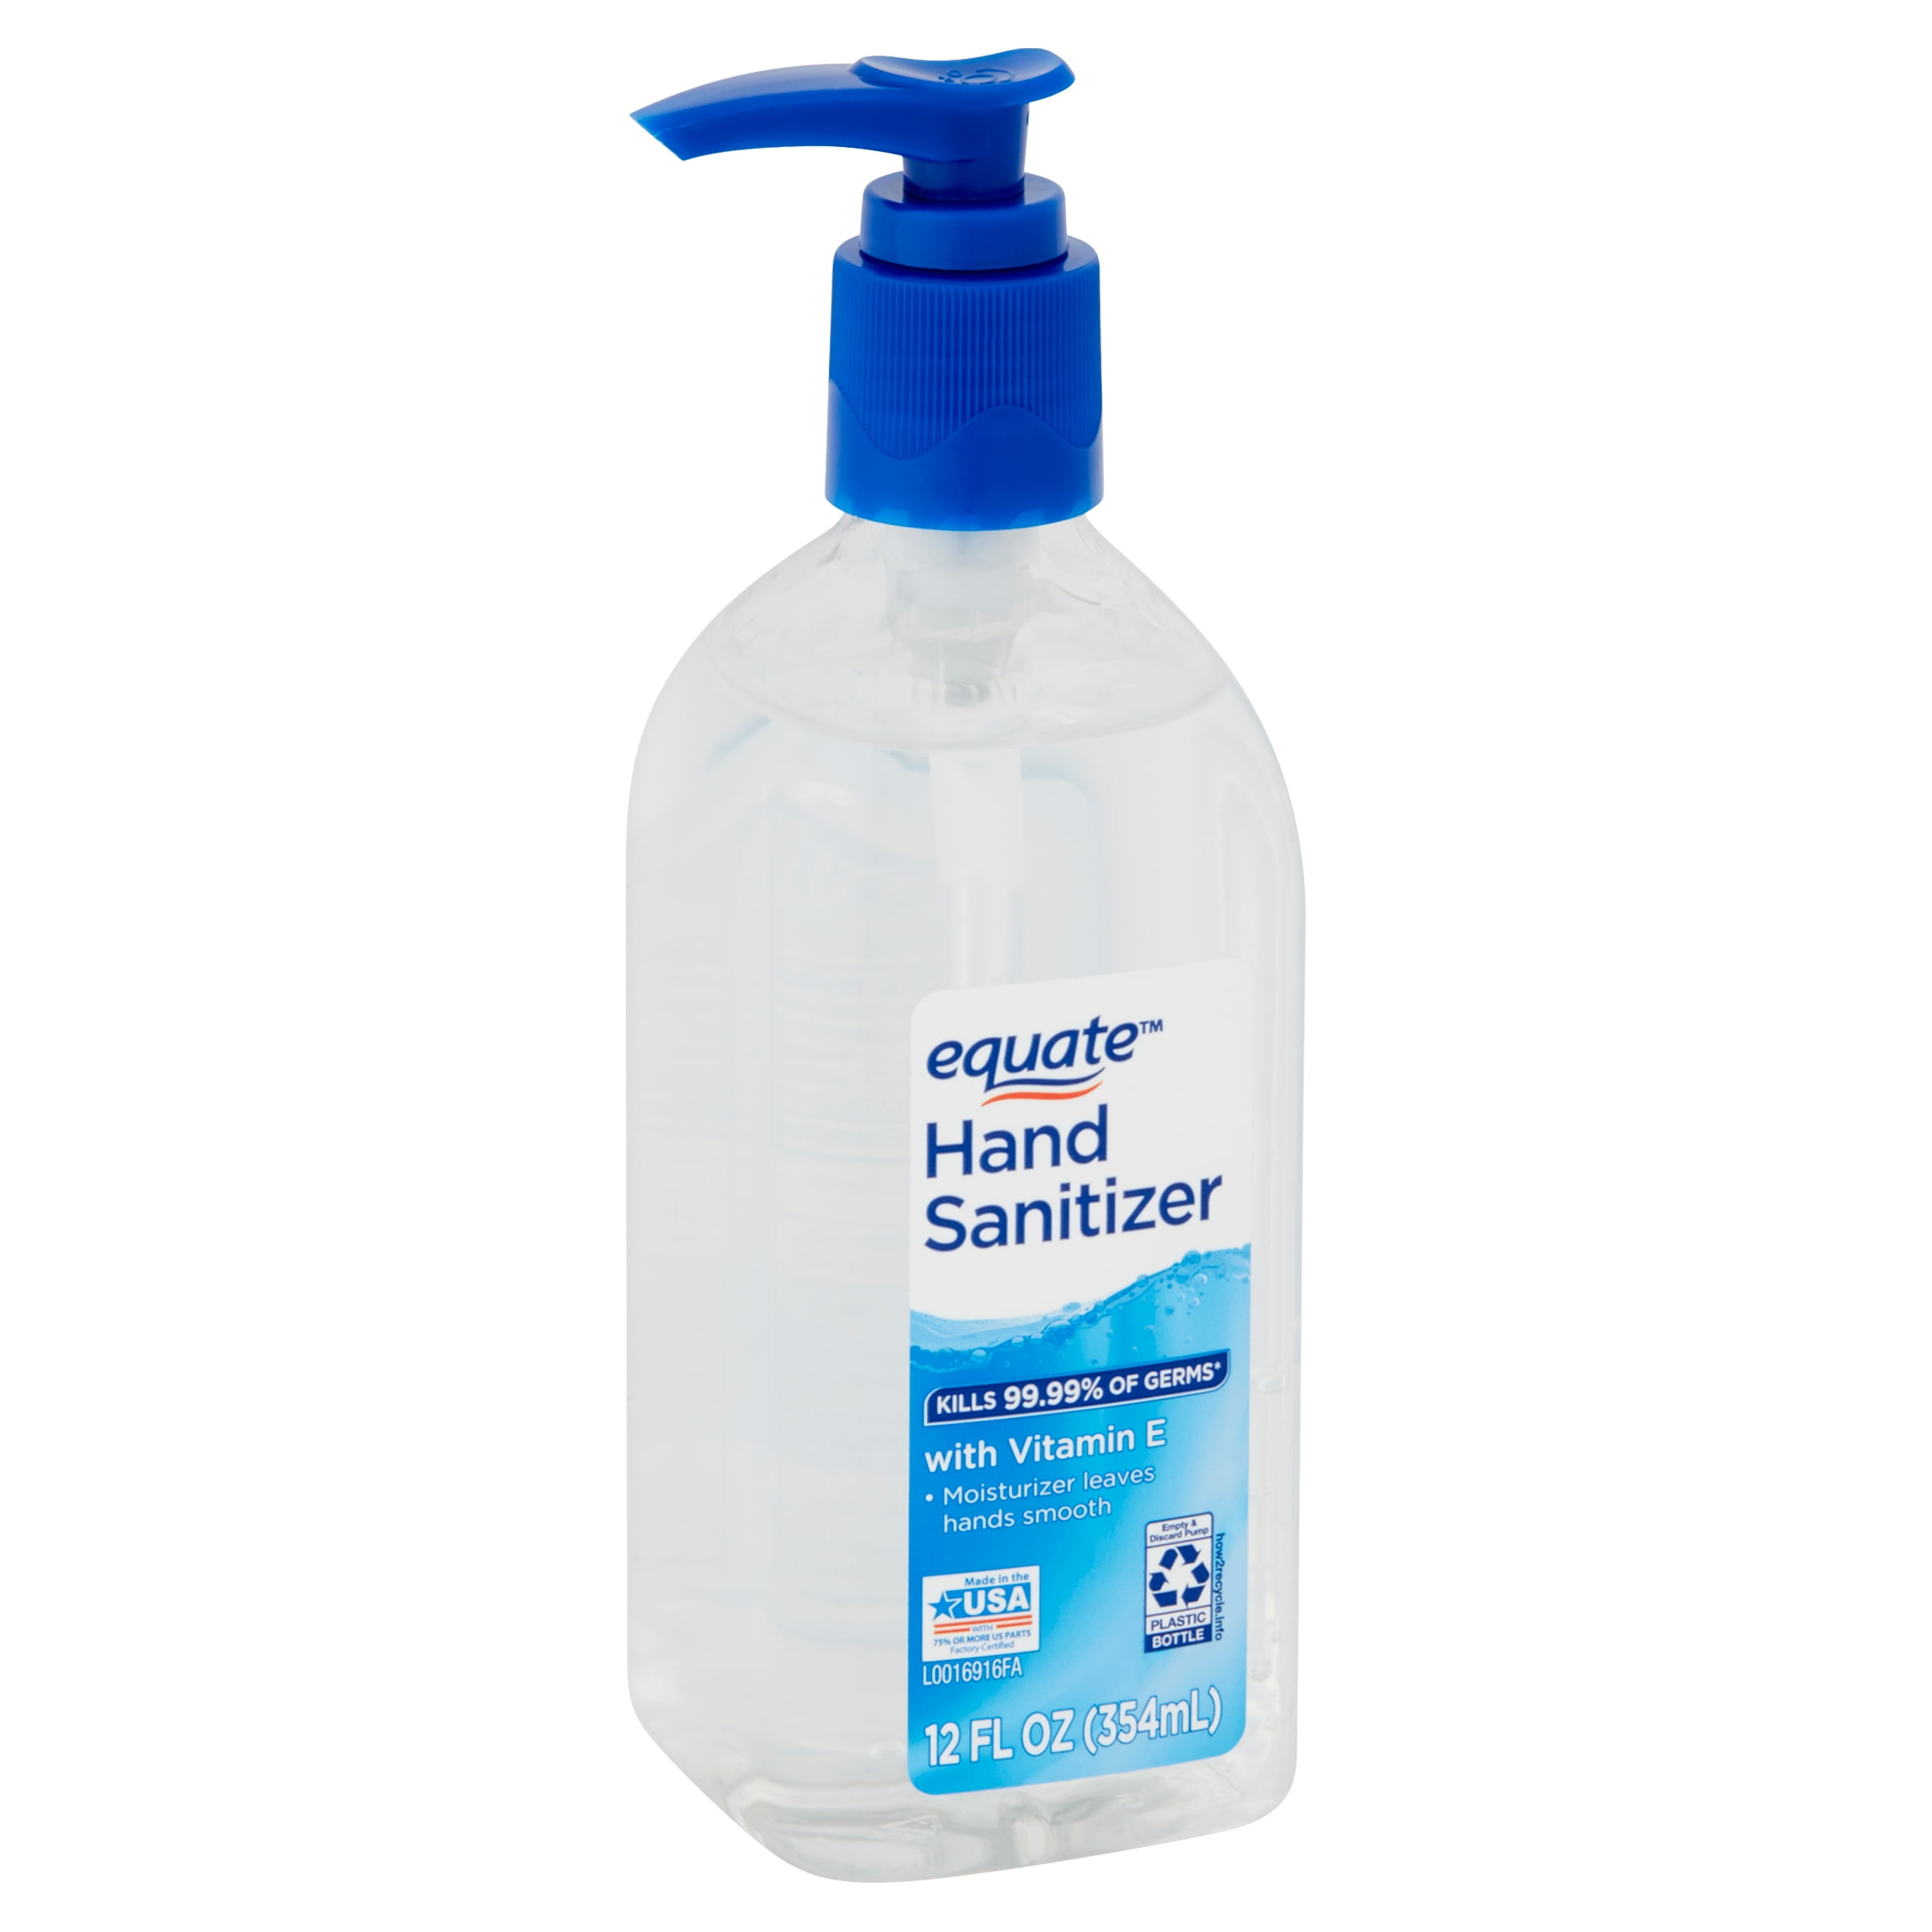 Hand Sanitizer - Walmart Inventory Checker - BrickSeek.